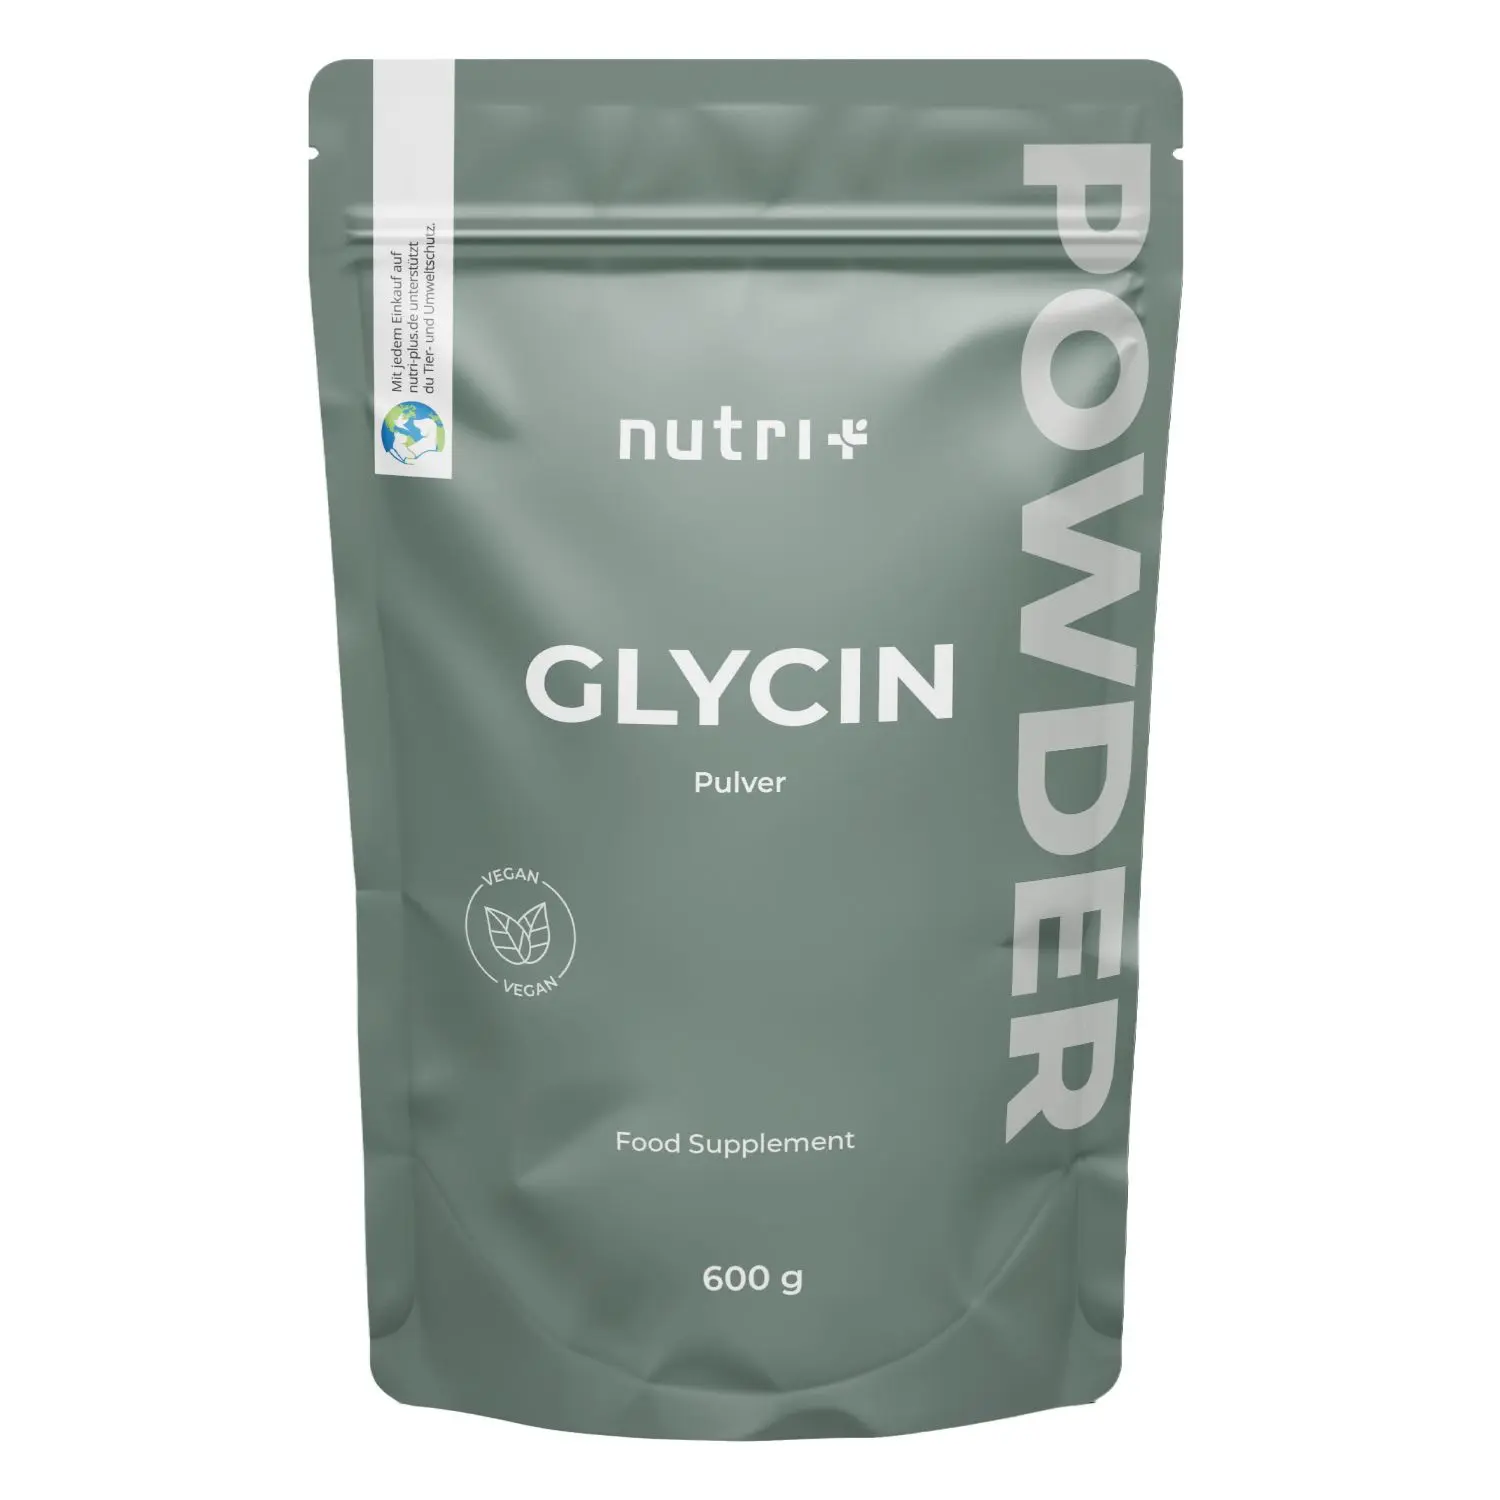 nutri+ Glycin Pulver | 600g